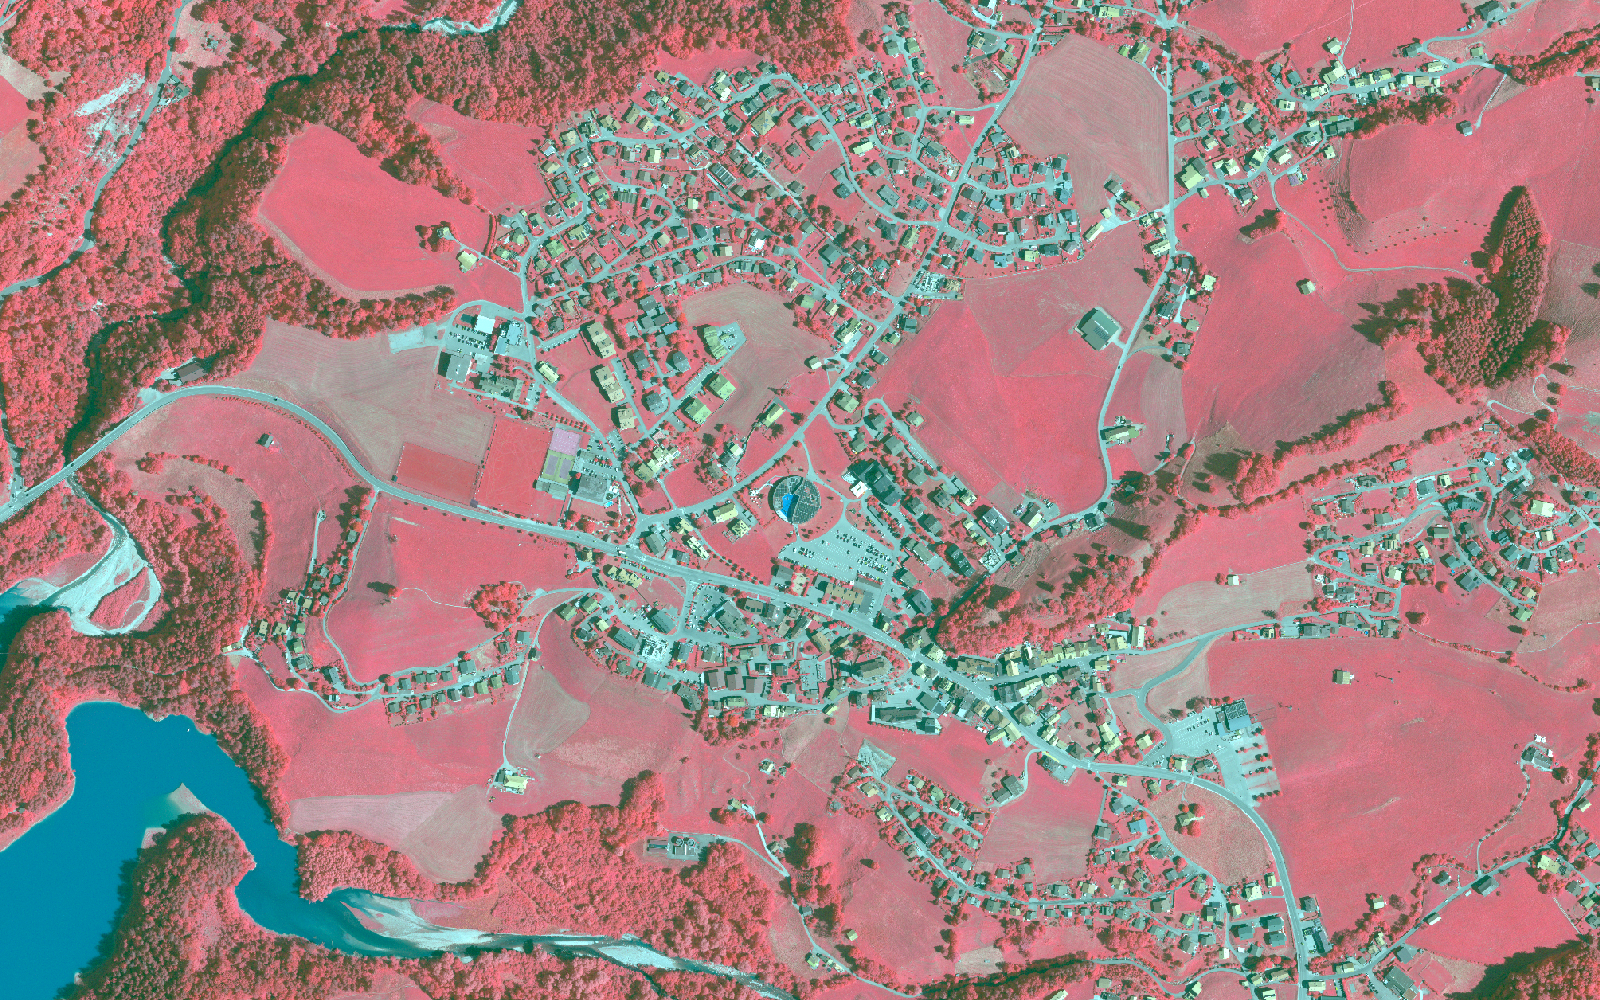 L'image montre une vue aérienne infrarouge de la région de Charmey (FR).  